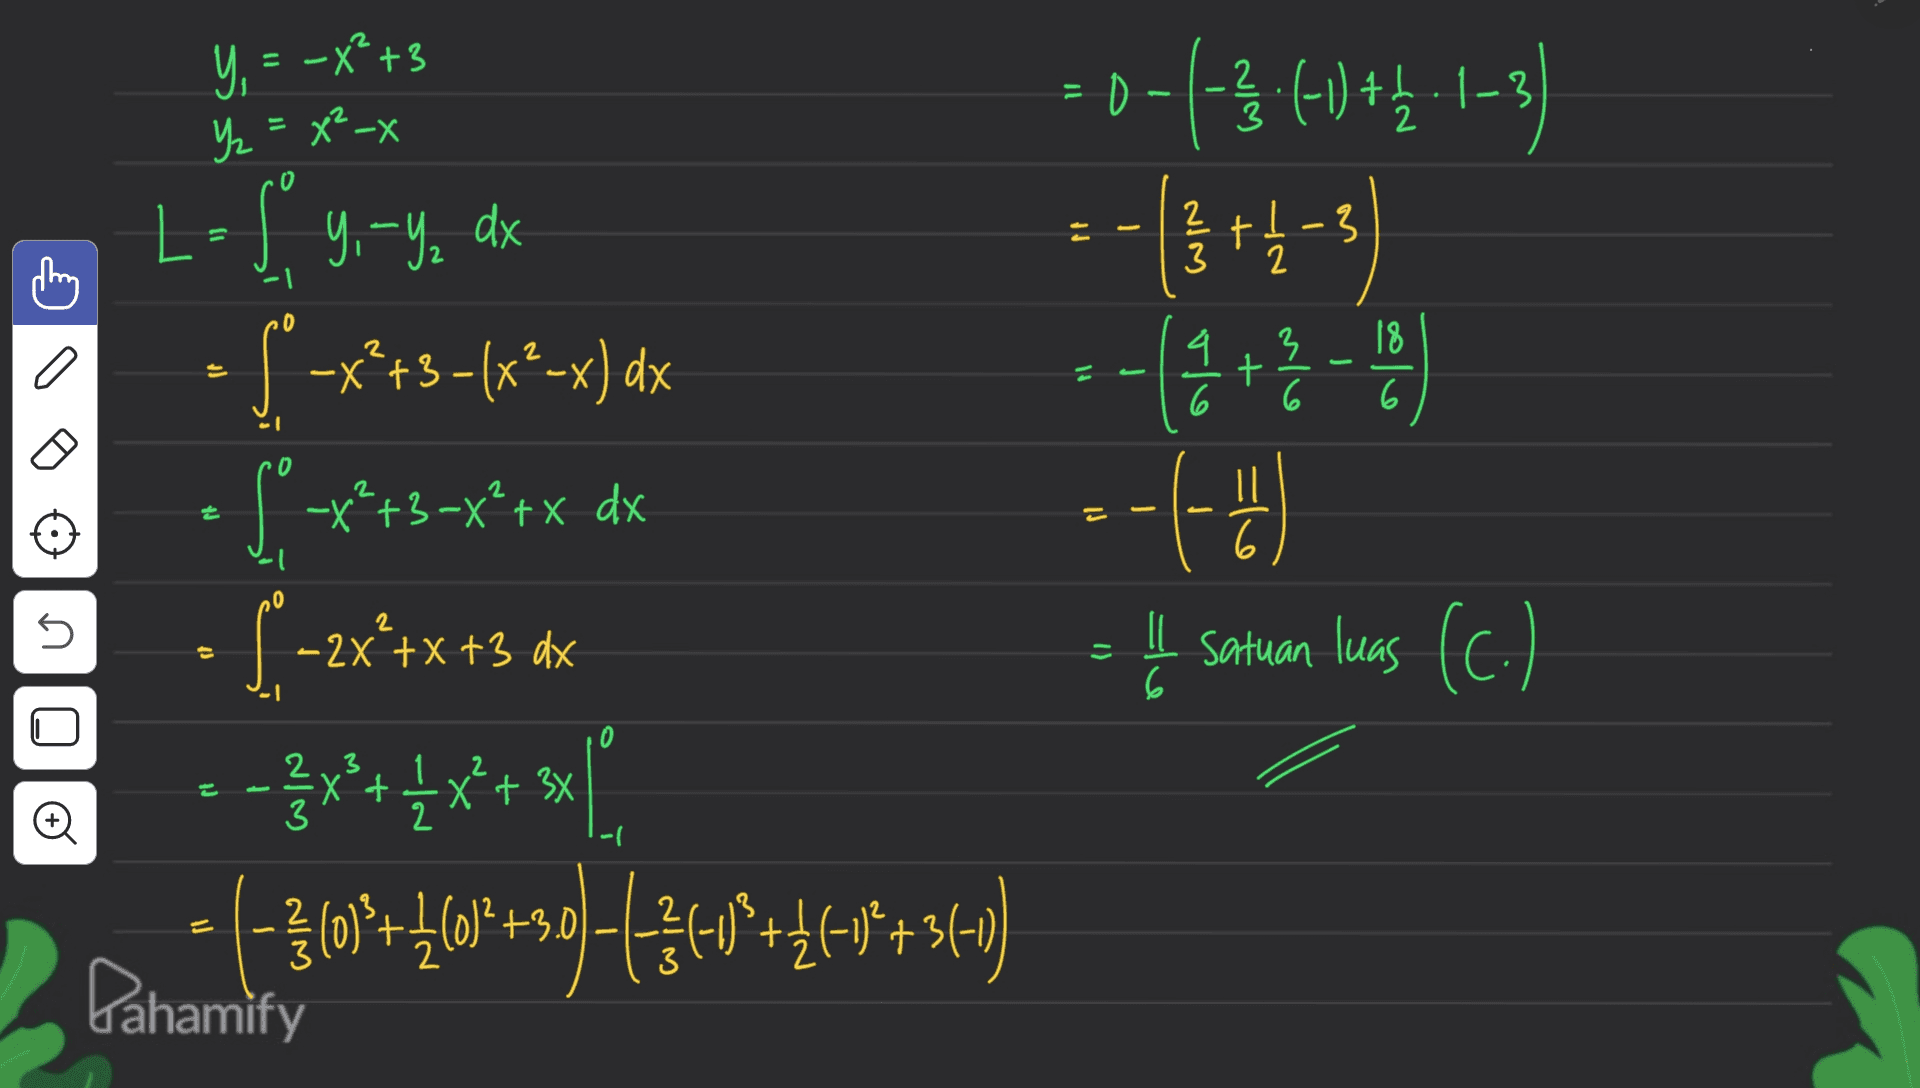 2 Y, = -x? +3 Yz Y₂ = x²-x . 2X -0-1-3-61) } :(-1) +4-1-3 o - , 23 +1 -3 3 t 2 a ។ 4 3 + 6 6 18 6 0 2 -x²+3x²+x dx = - -(0) - 66 L-S 9. – 9, dx $* -x*+5(x*-x) dx - $ **tx [1-2x**x+3 ax --}x+ 4x + x } • (-360'+40'+99)++++++++*+36) ()() t - + st ll Į satuan luas (c.) 1) 6 1 2 X + 3 + 3x Đ -| Pahamify 